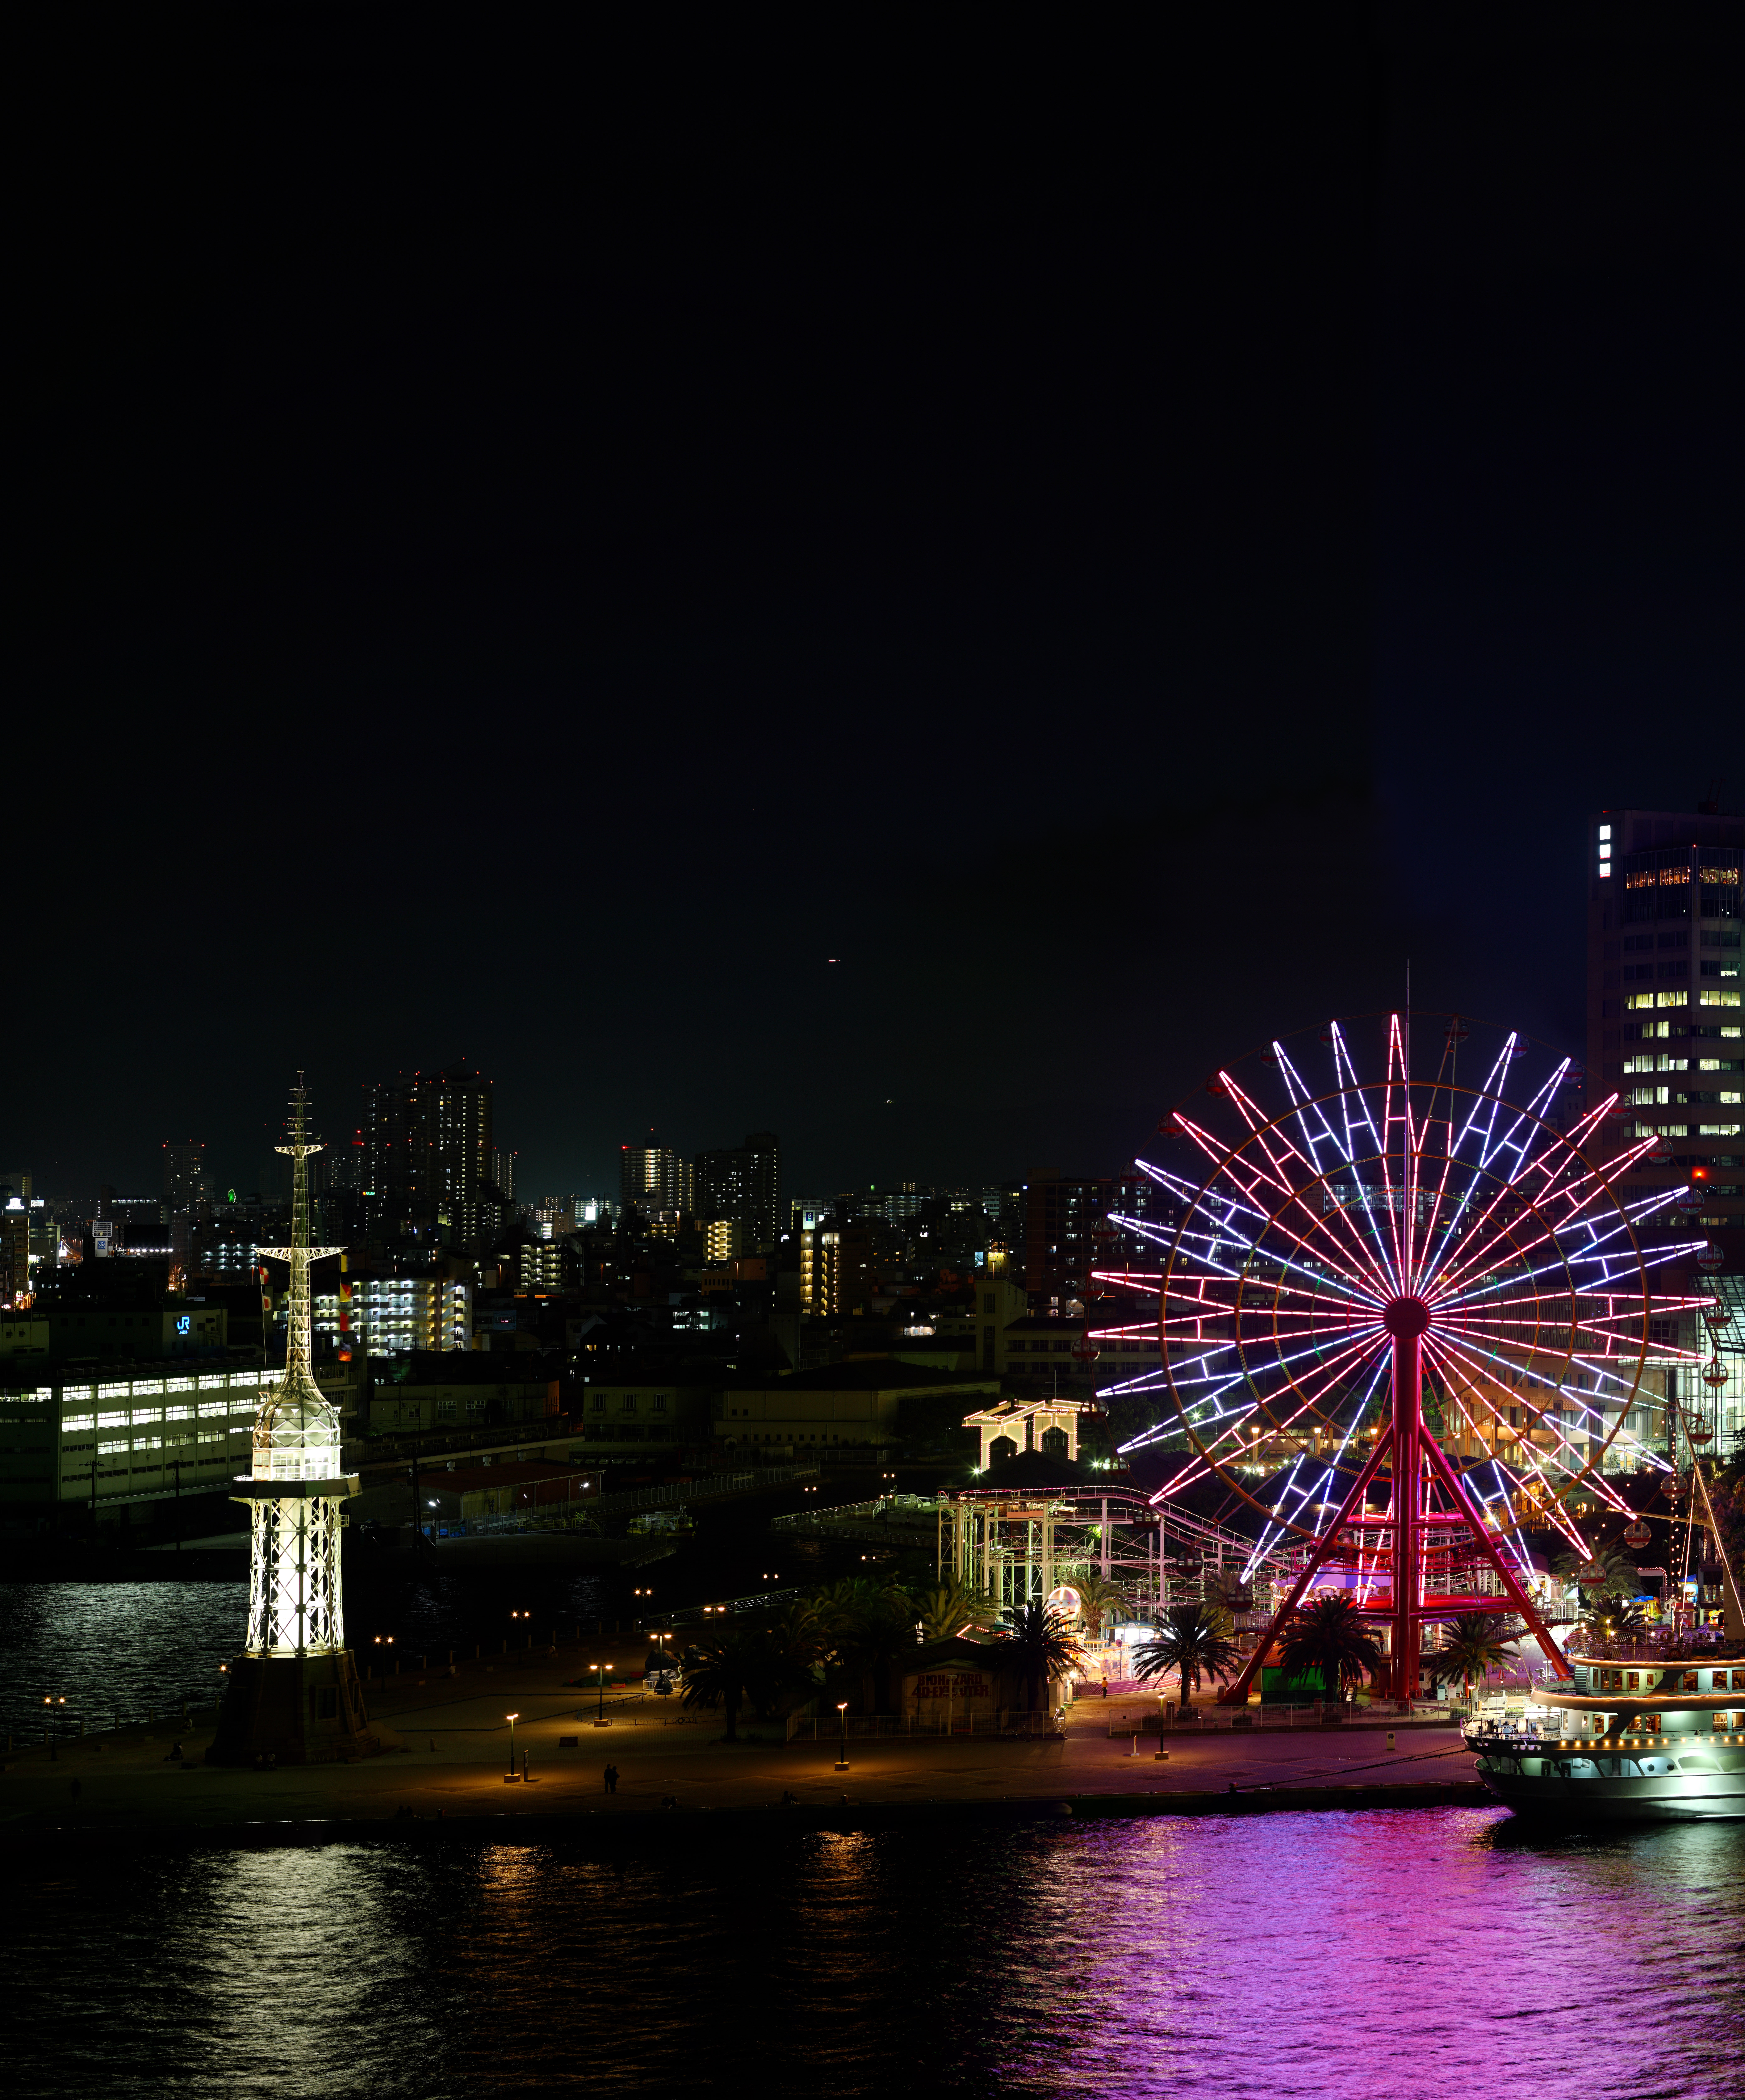 fotografia, materiale, libero il panorama, dipinga, fotografia di scorta,Kobe il porto spazzata di vista serale dell'occhio, porto, Ferris la ruota, barca di piacere, attrazione turistica